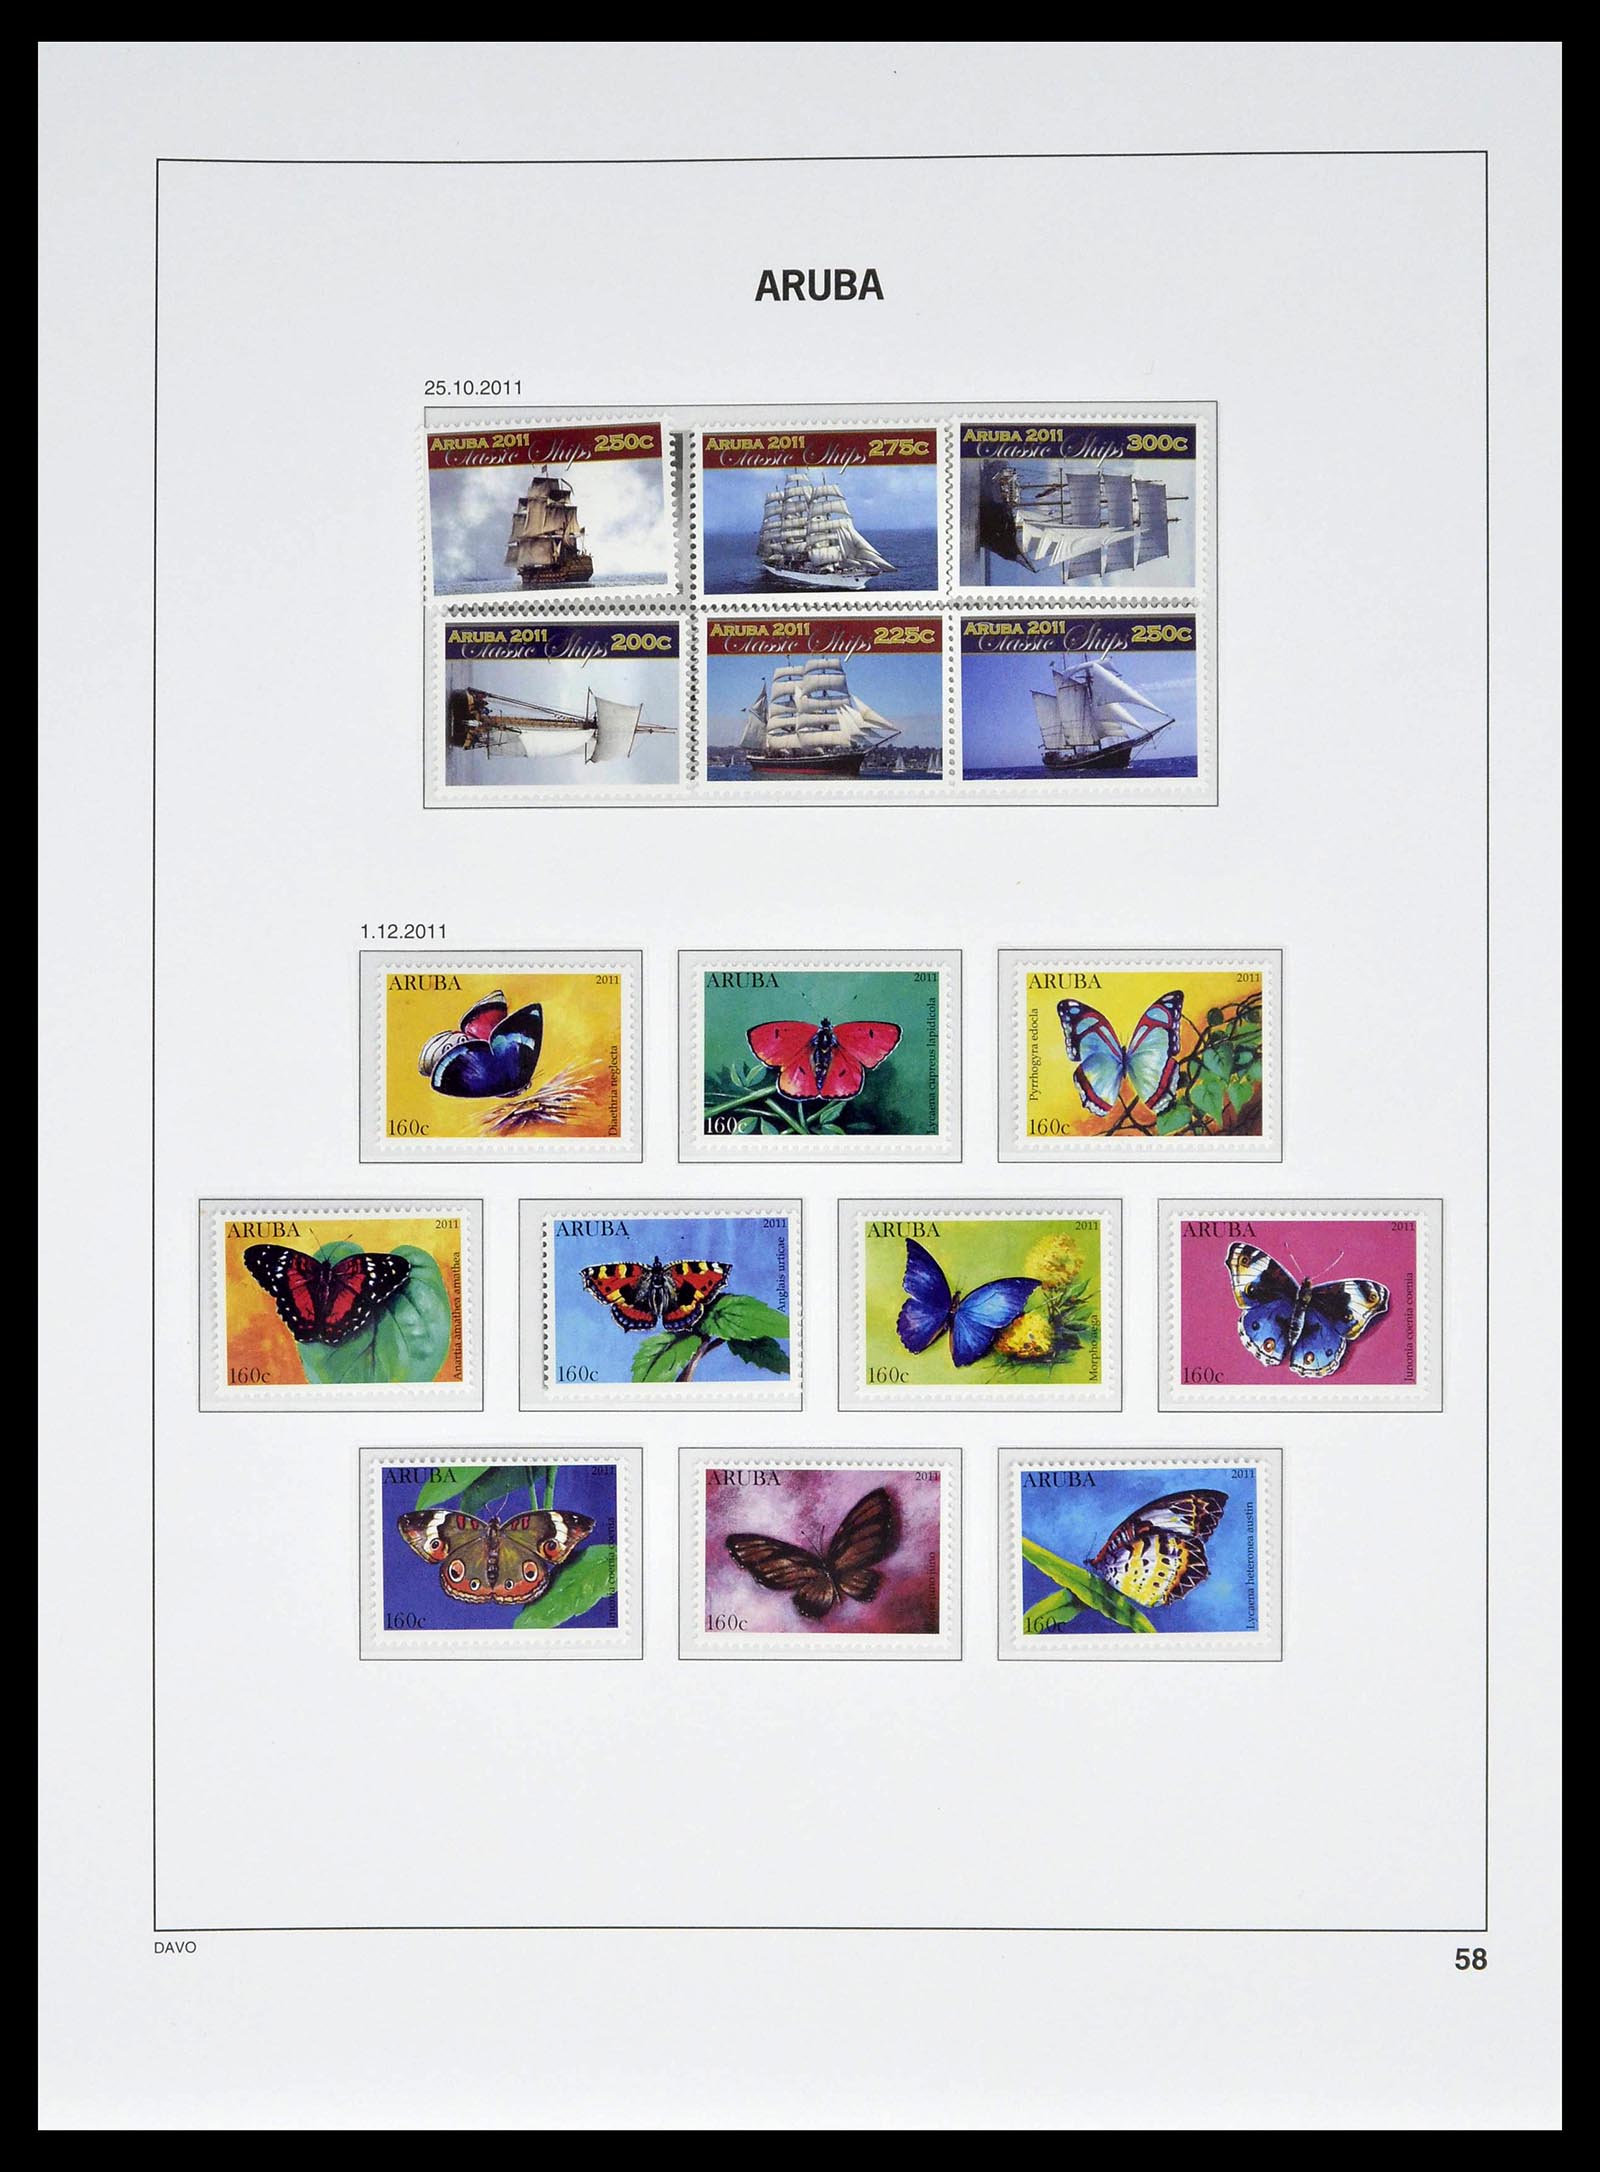 39361 0058 - Stamp collection 39361 Aruba 1986-2013.